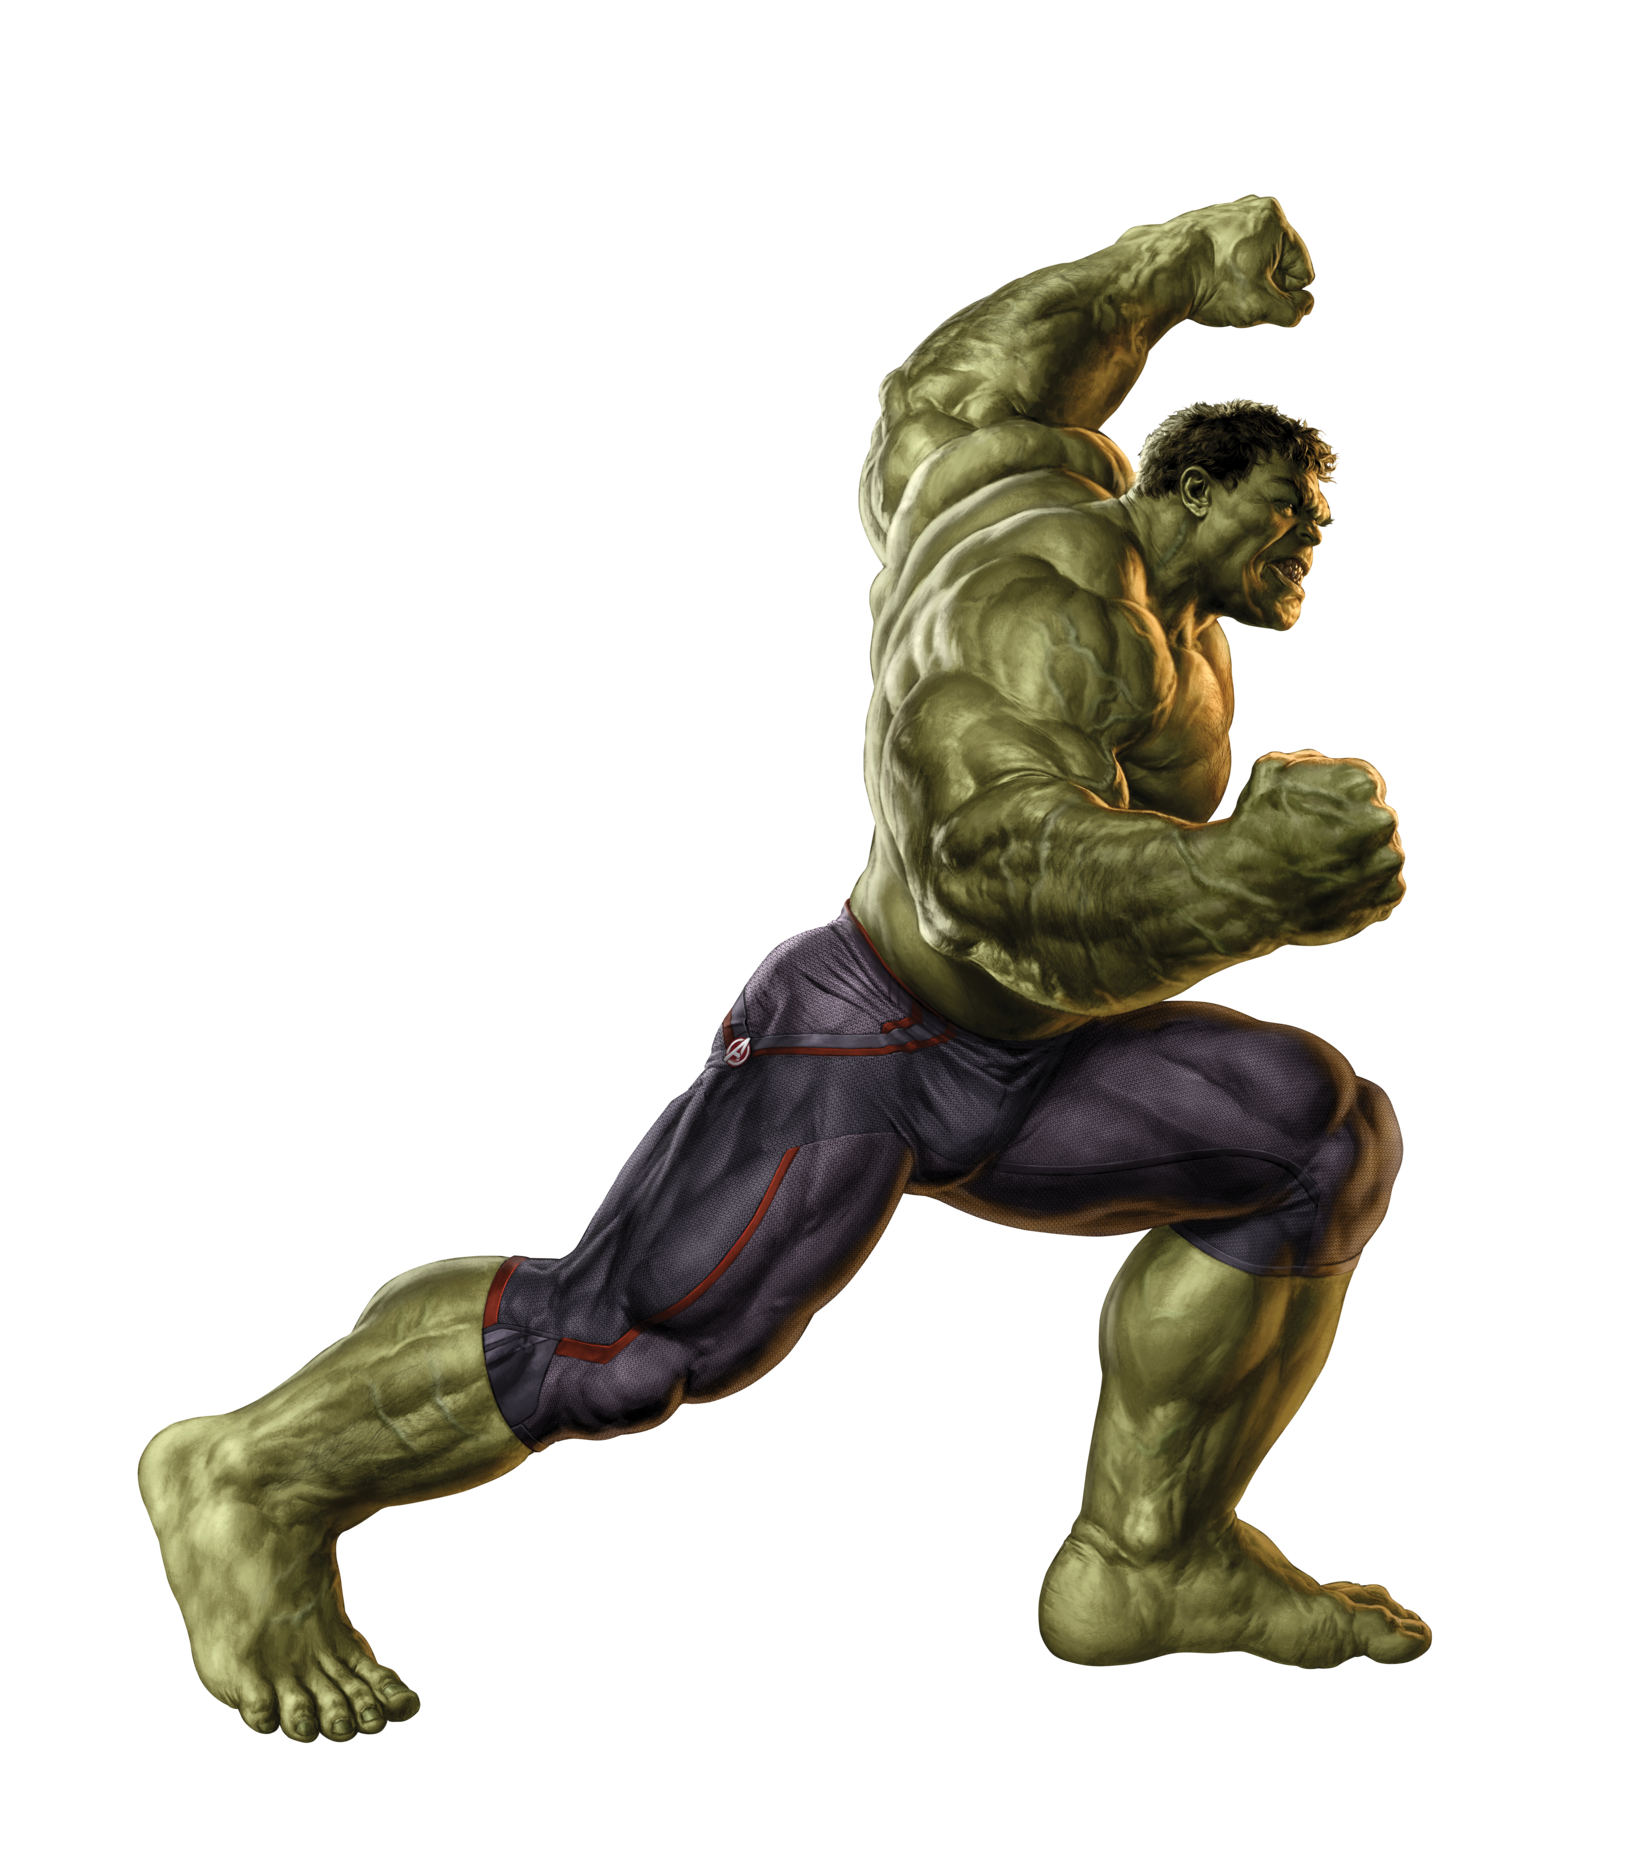 Immagine di alta qualità di Hulk PNG